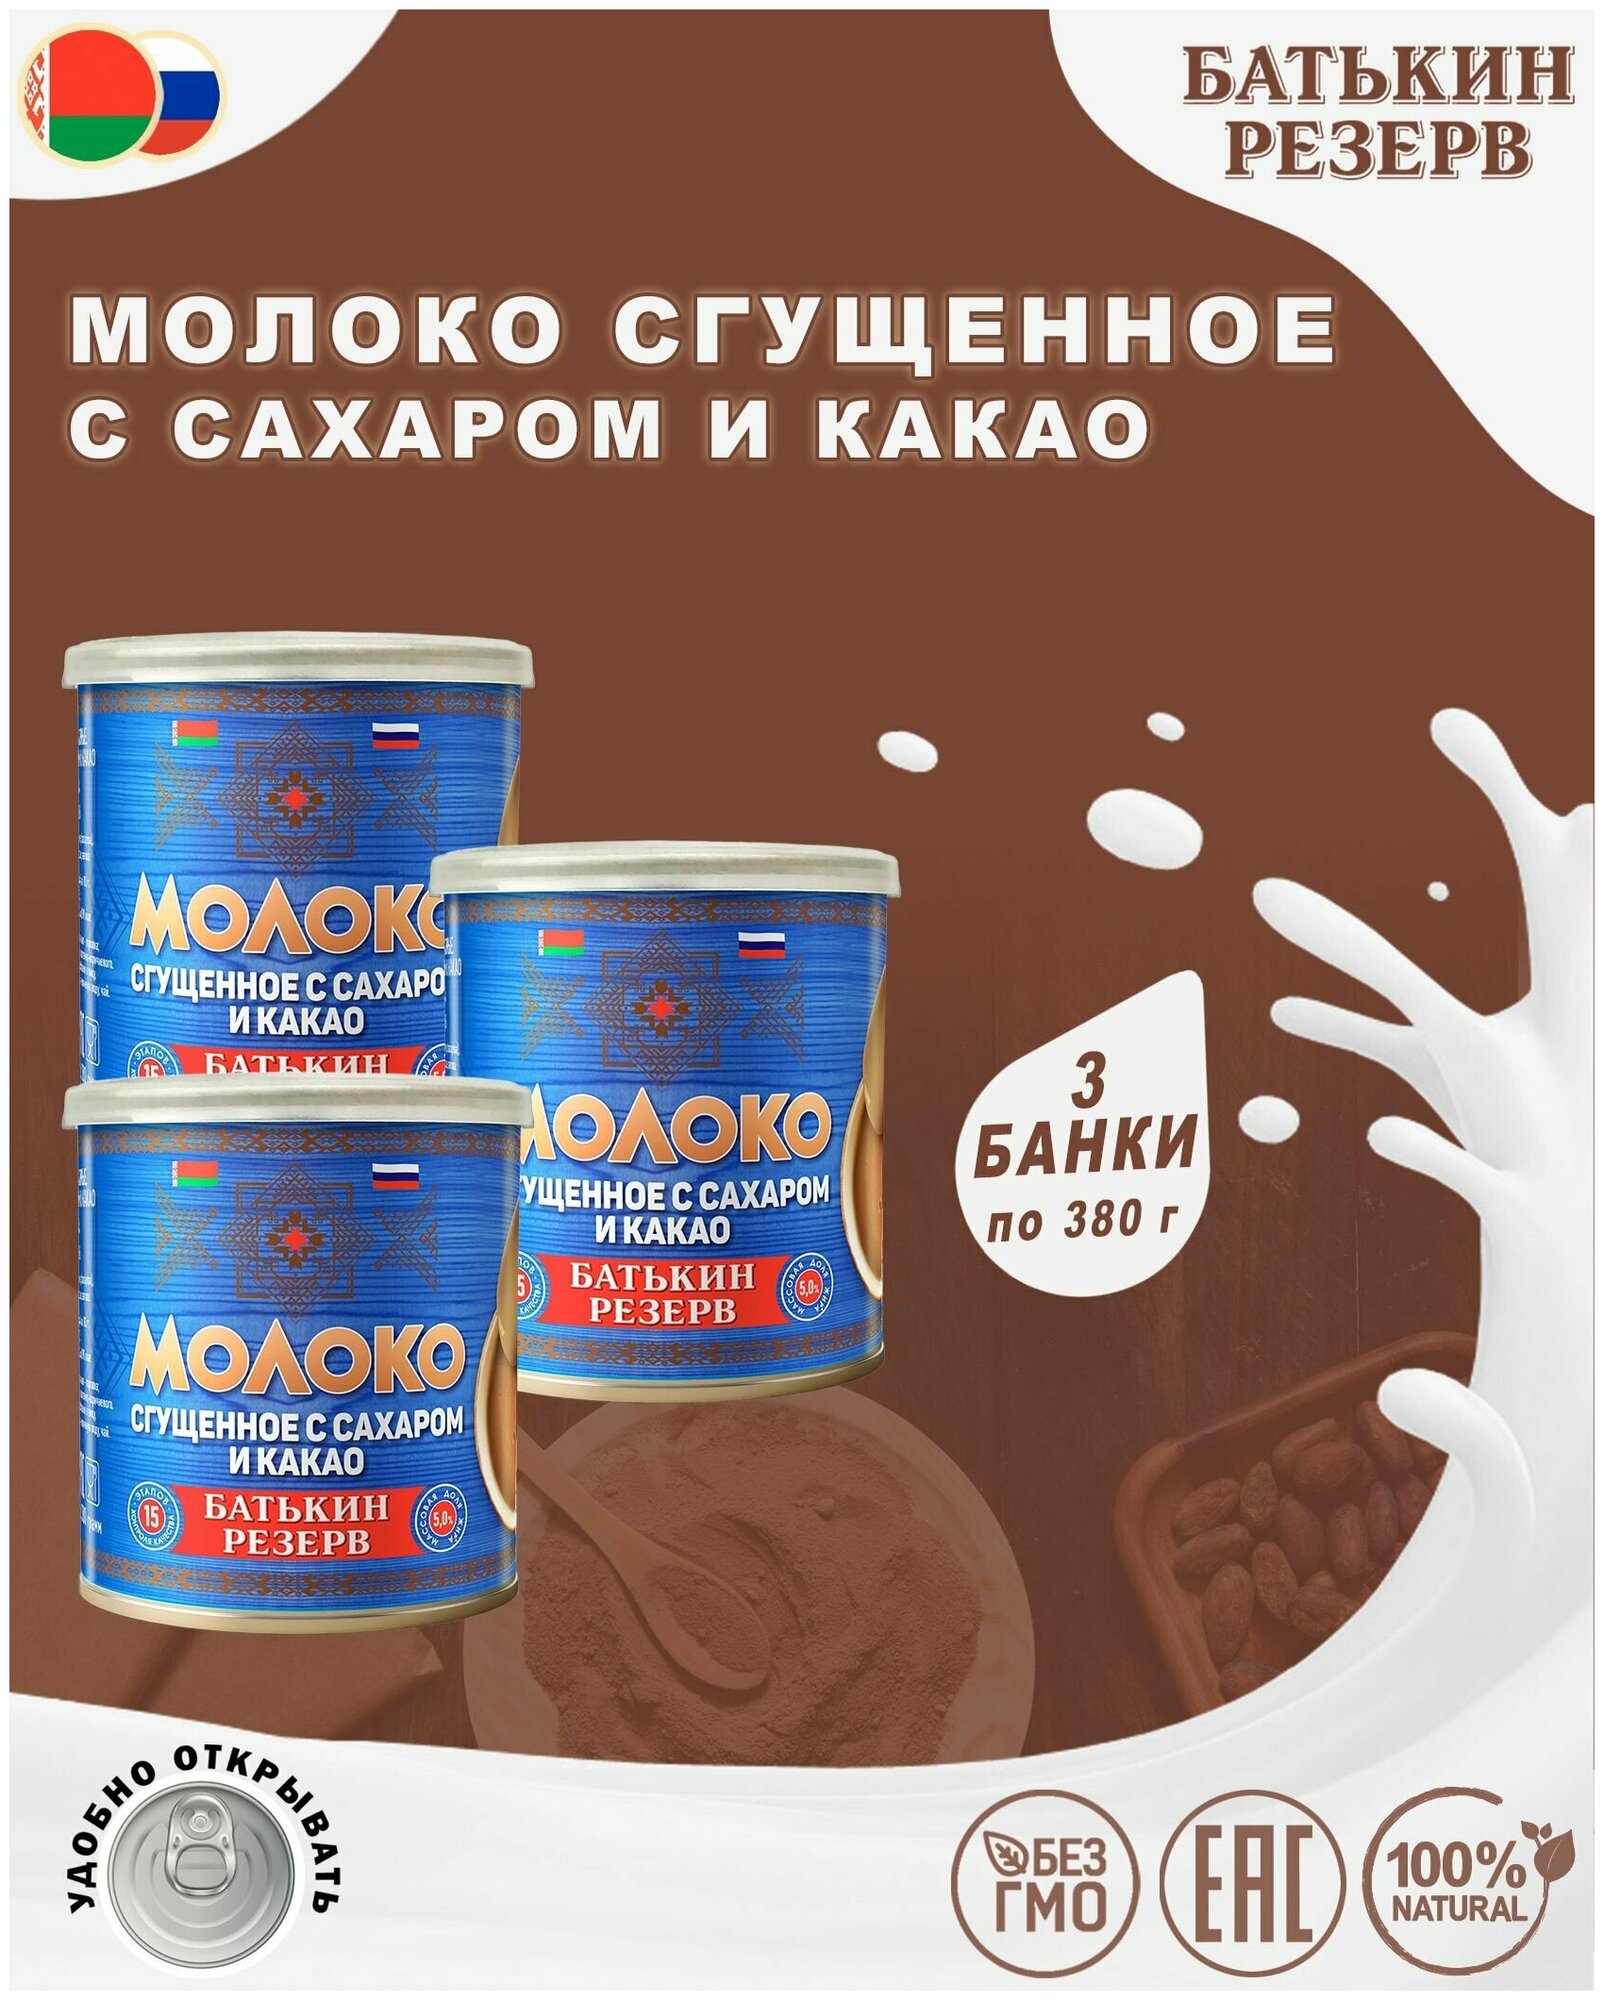 Молоко сгущенное с сахаром и какао, Батькин резерв, 3 шт. по 380 г